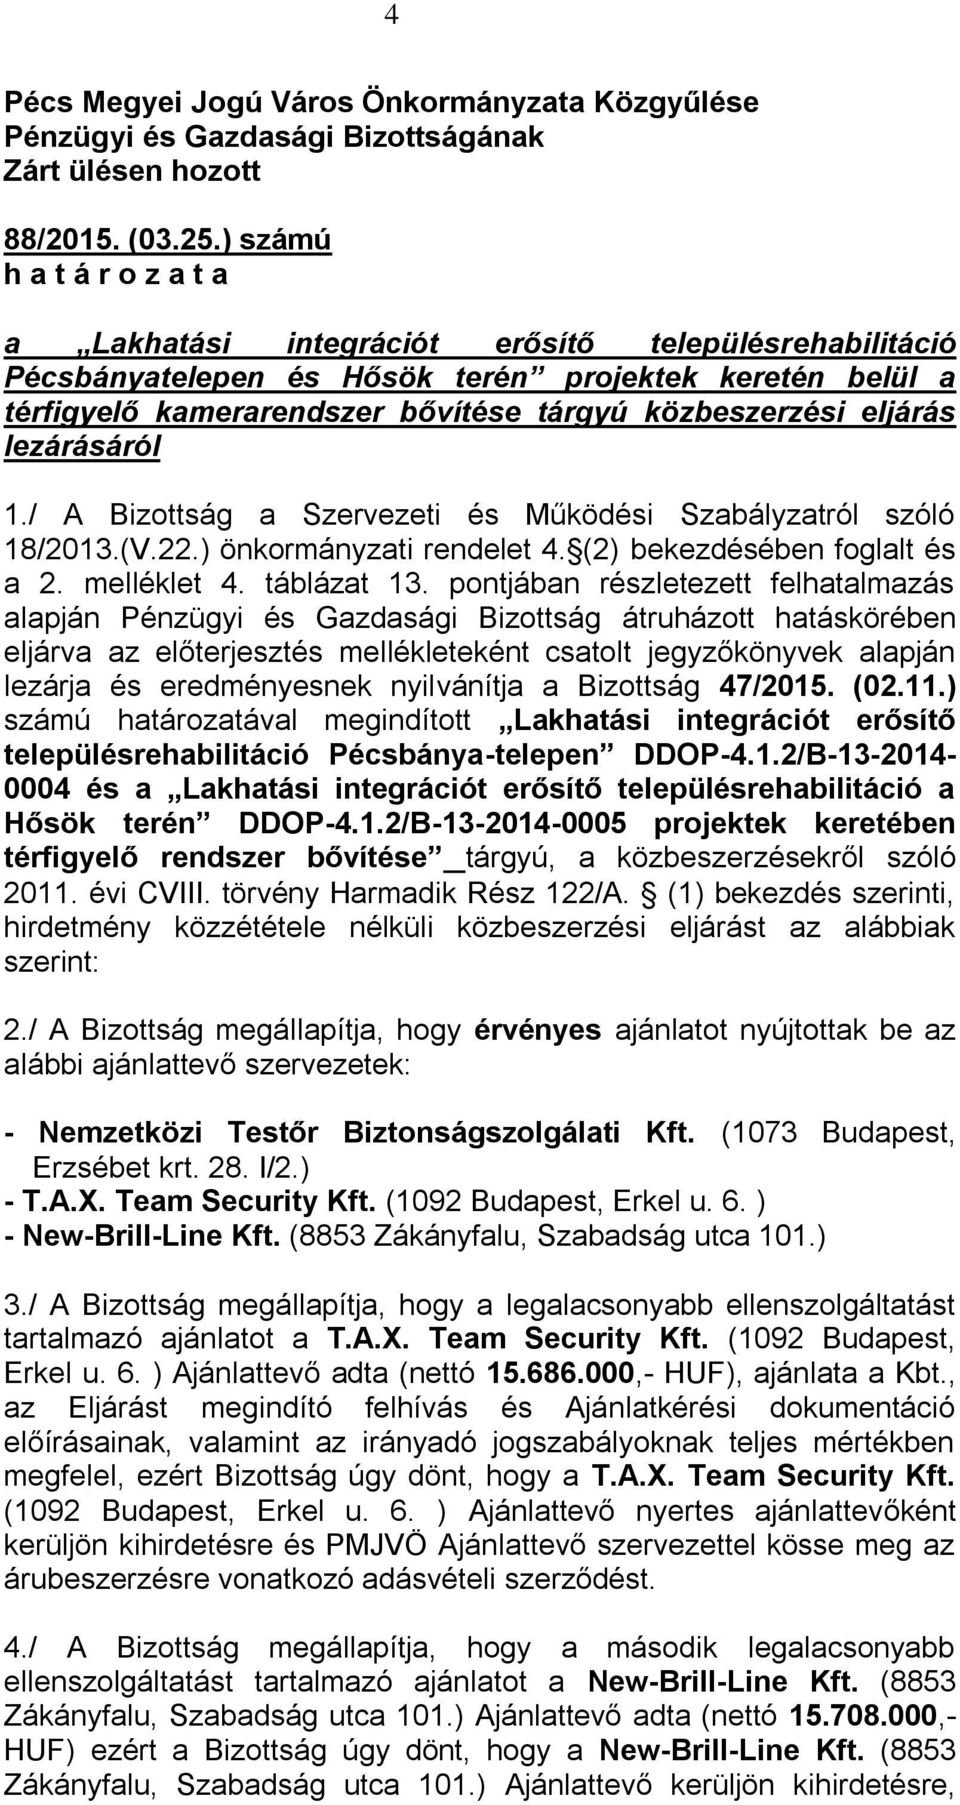 eljárás lezárásáról 1./ A Bizottság a Szervezeti és Működési Szabályzatról szóló 18/2013.(V.22.) önkormányzati rendelet 4. (2) bekezdésében foglalt és a 2. melléklet 4. táblázat 13.